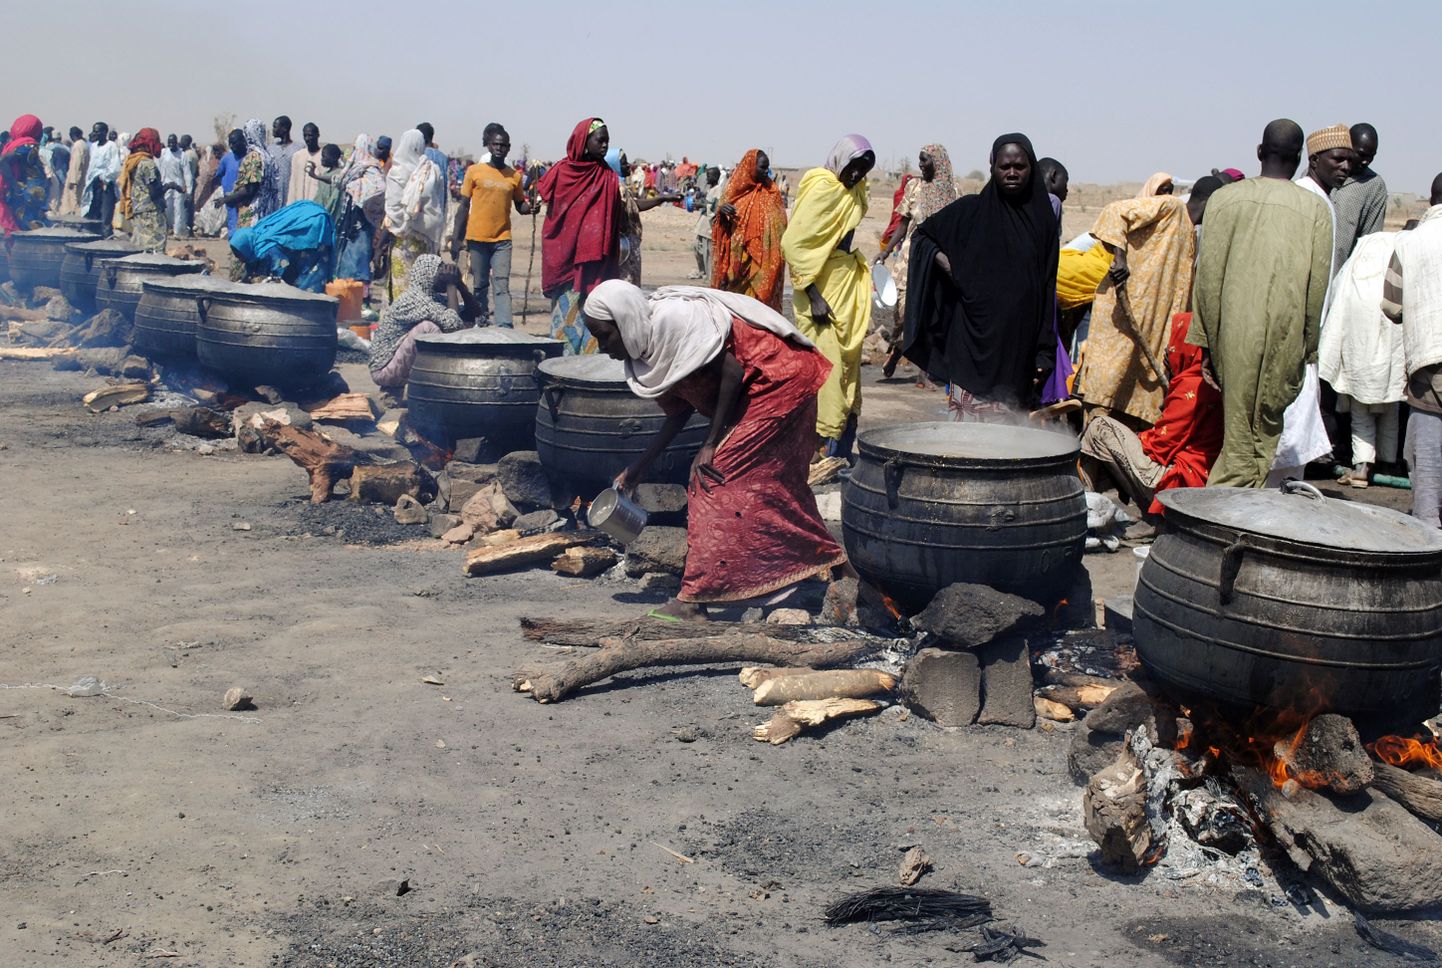 Sisepõgenike laager Nigeerias Borno osariigis. Viimasel ajal on piirkonnas vaenutegevus hoogustunud.